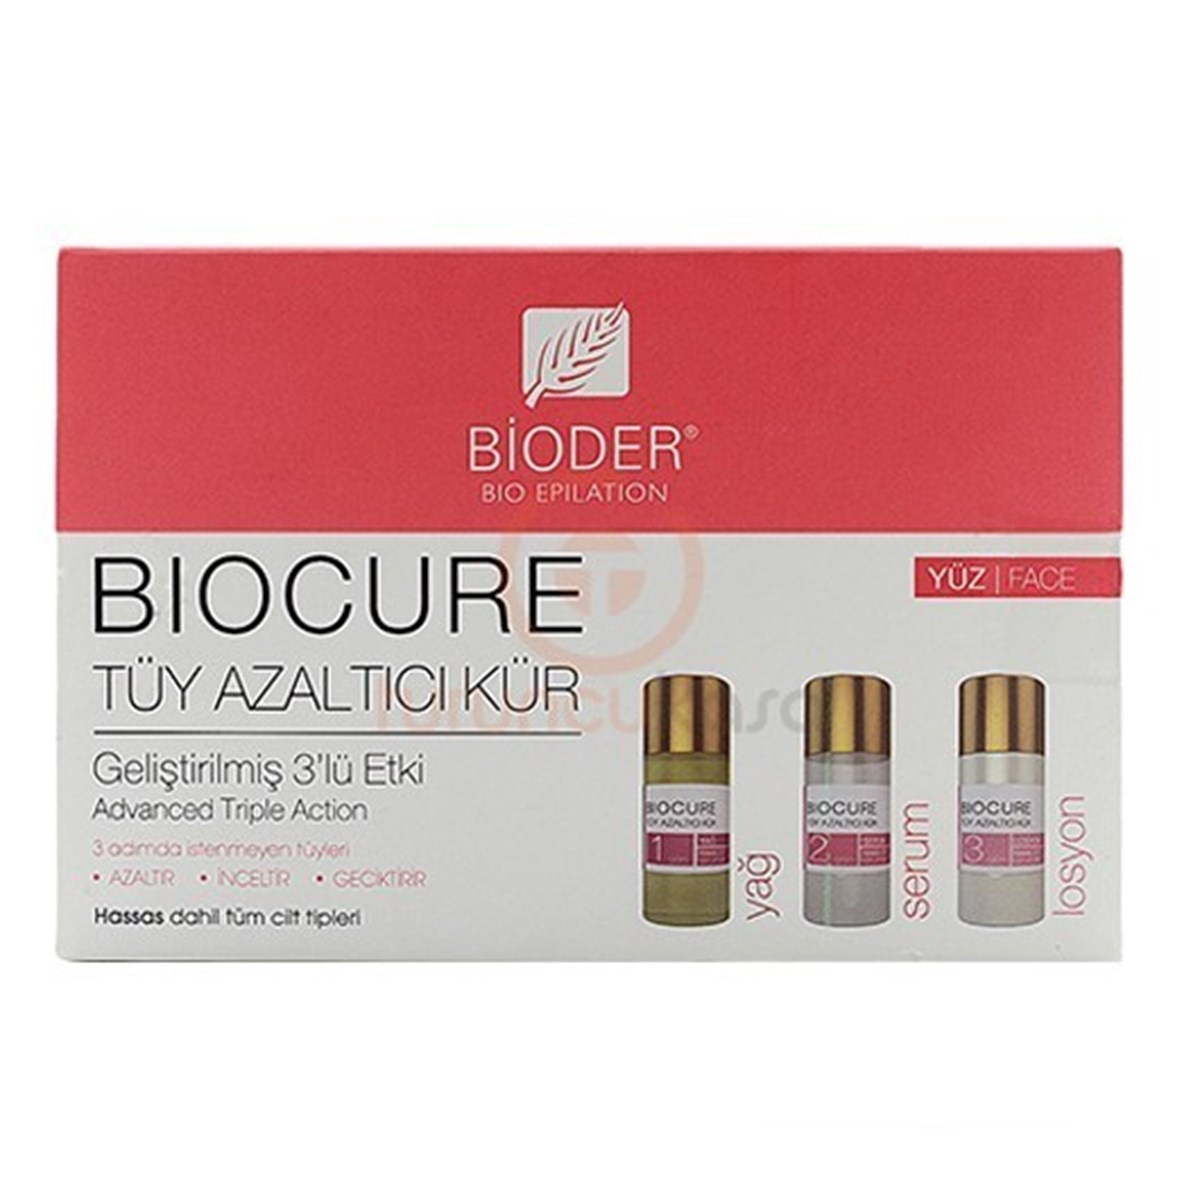 Bioder Biocure Tüy Azaltıcı Kür Yüz için 3x5ml Fiyatları | Dermosiparis.com